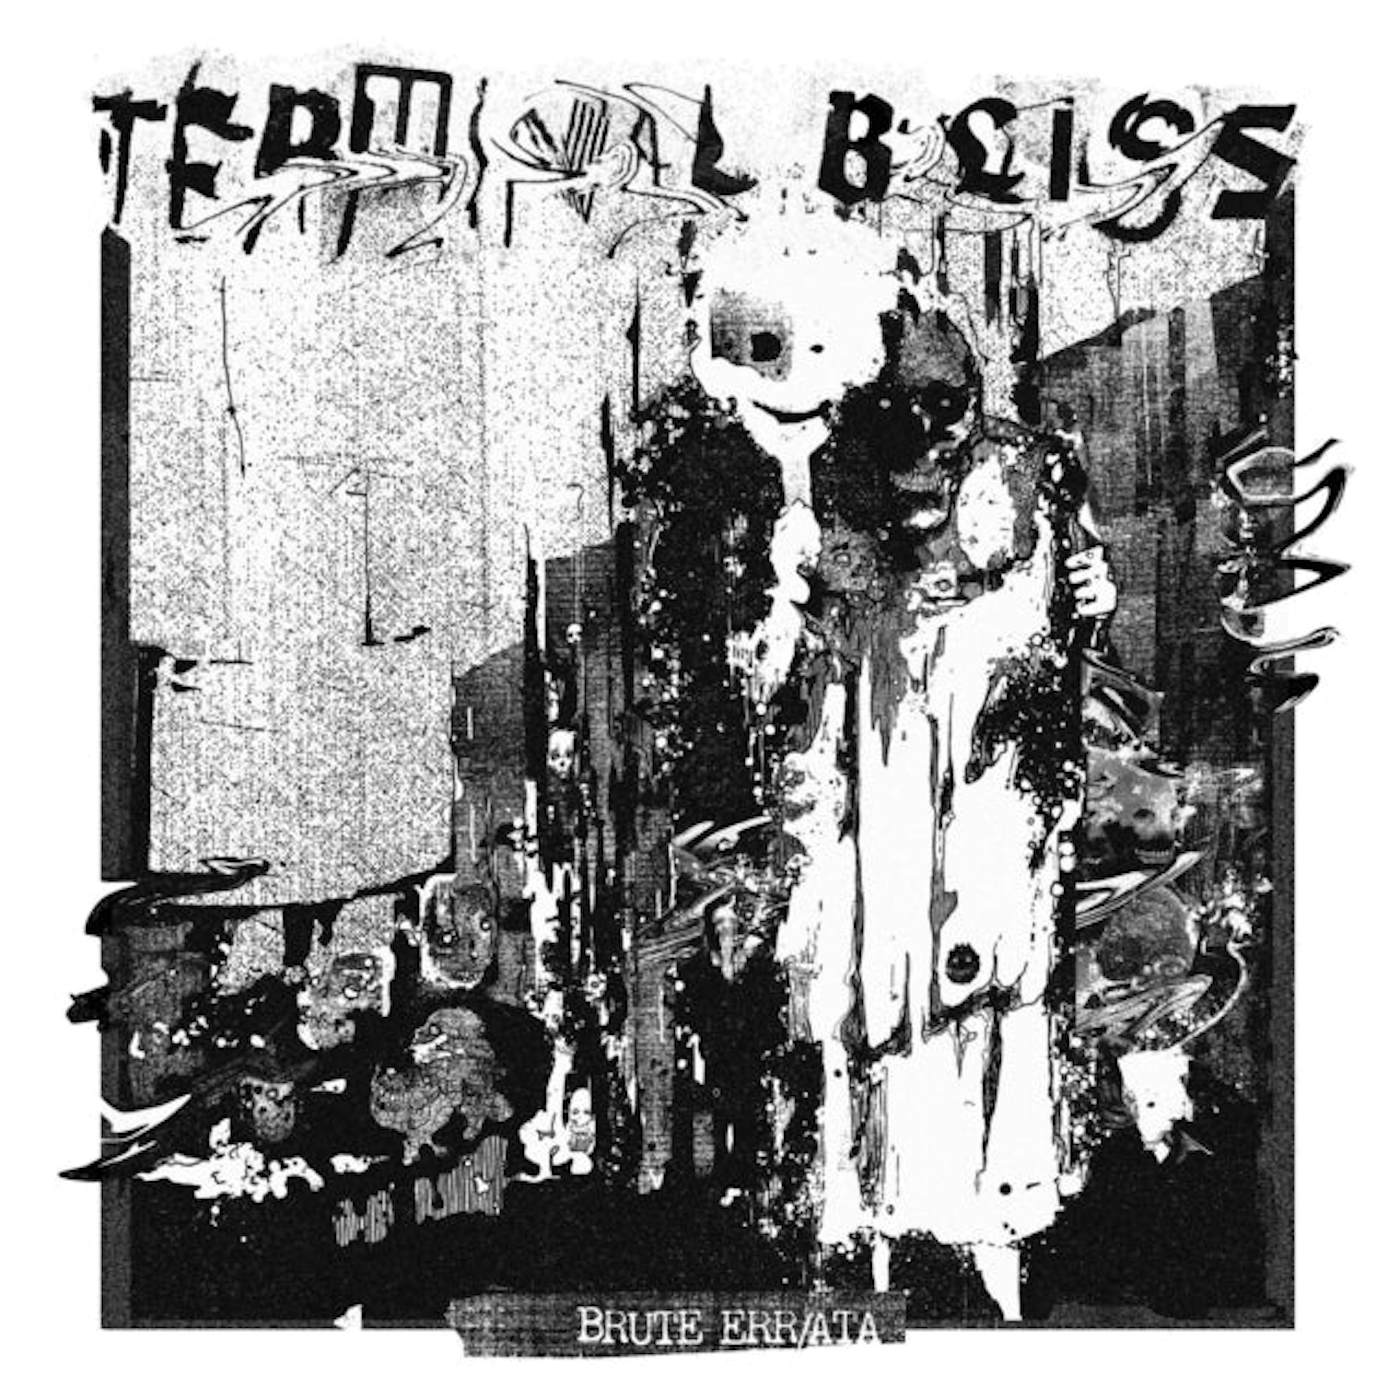 Terminal Bliss LP - Brute Err/Ata (Vinyl)